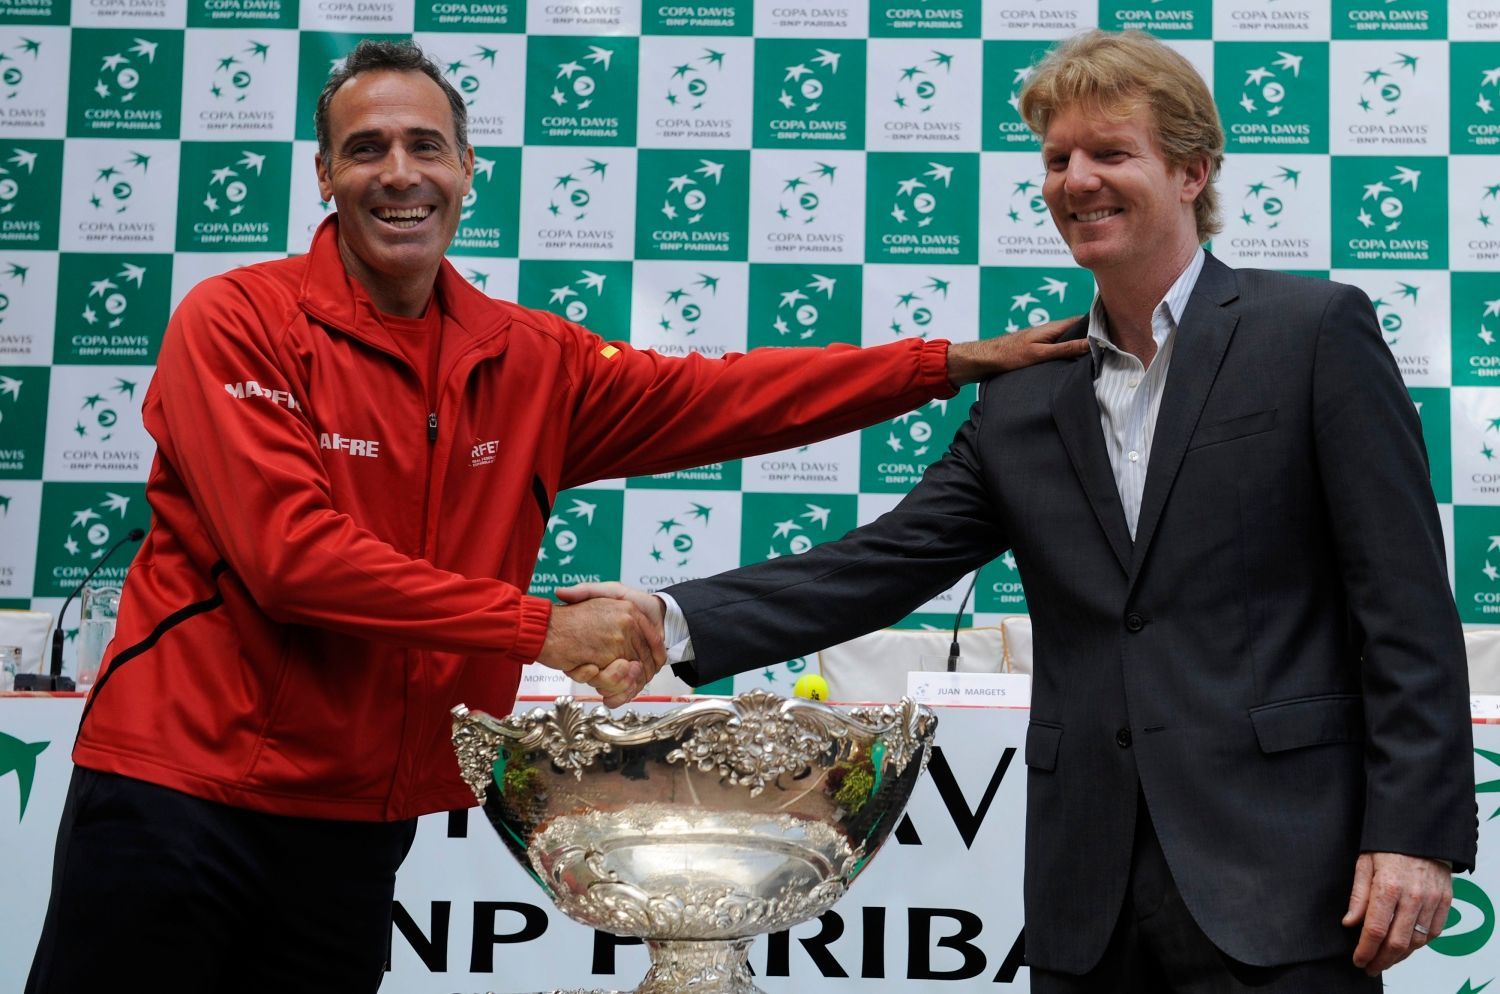 Tenisový kapitán Španělska Alex Corretja (vlevo) s americkým kapitánem Jimem Courierem během oficiálního losování semifinálových utkání Davis Cupu 2012.